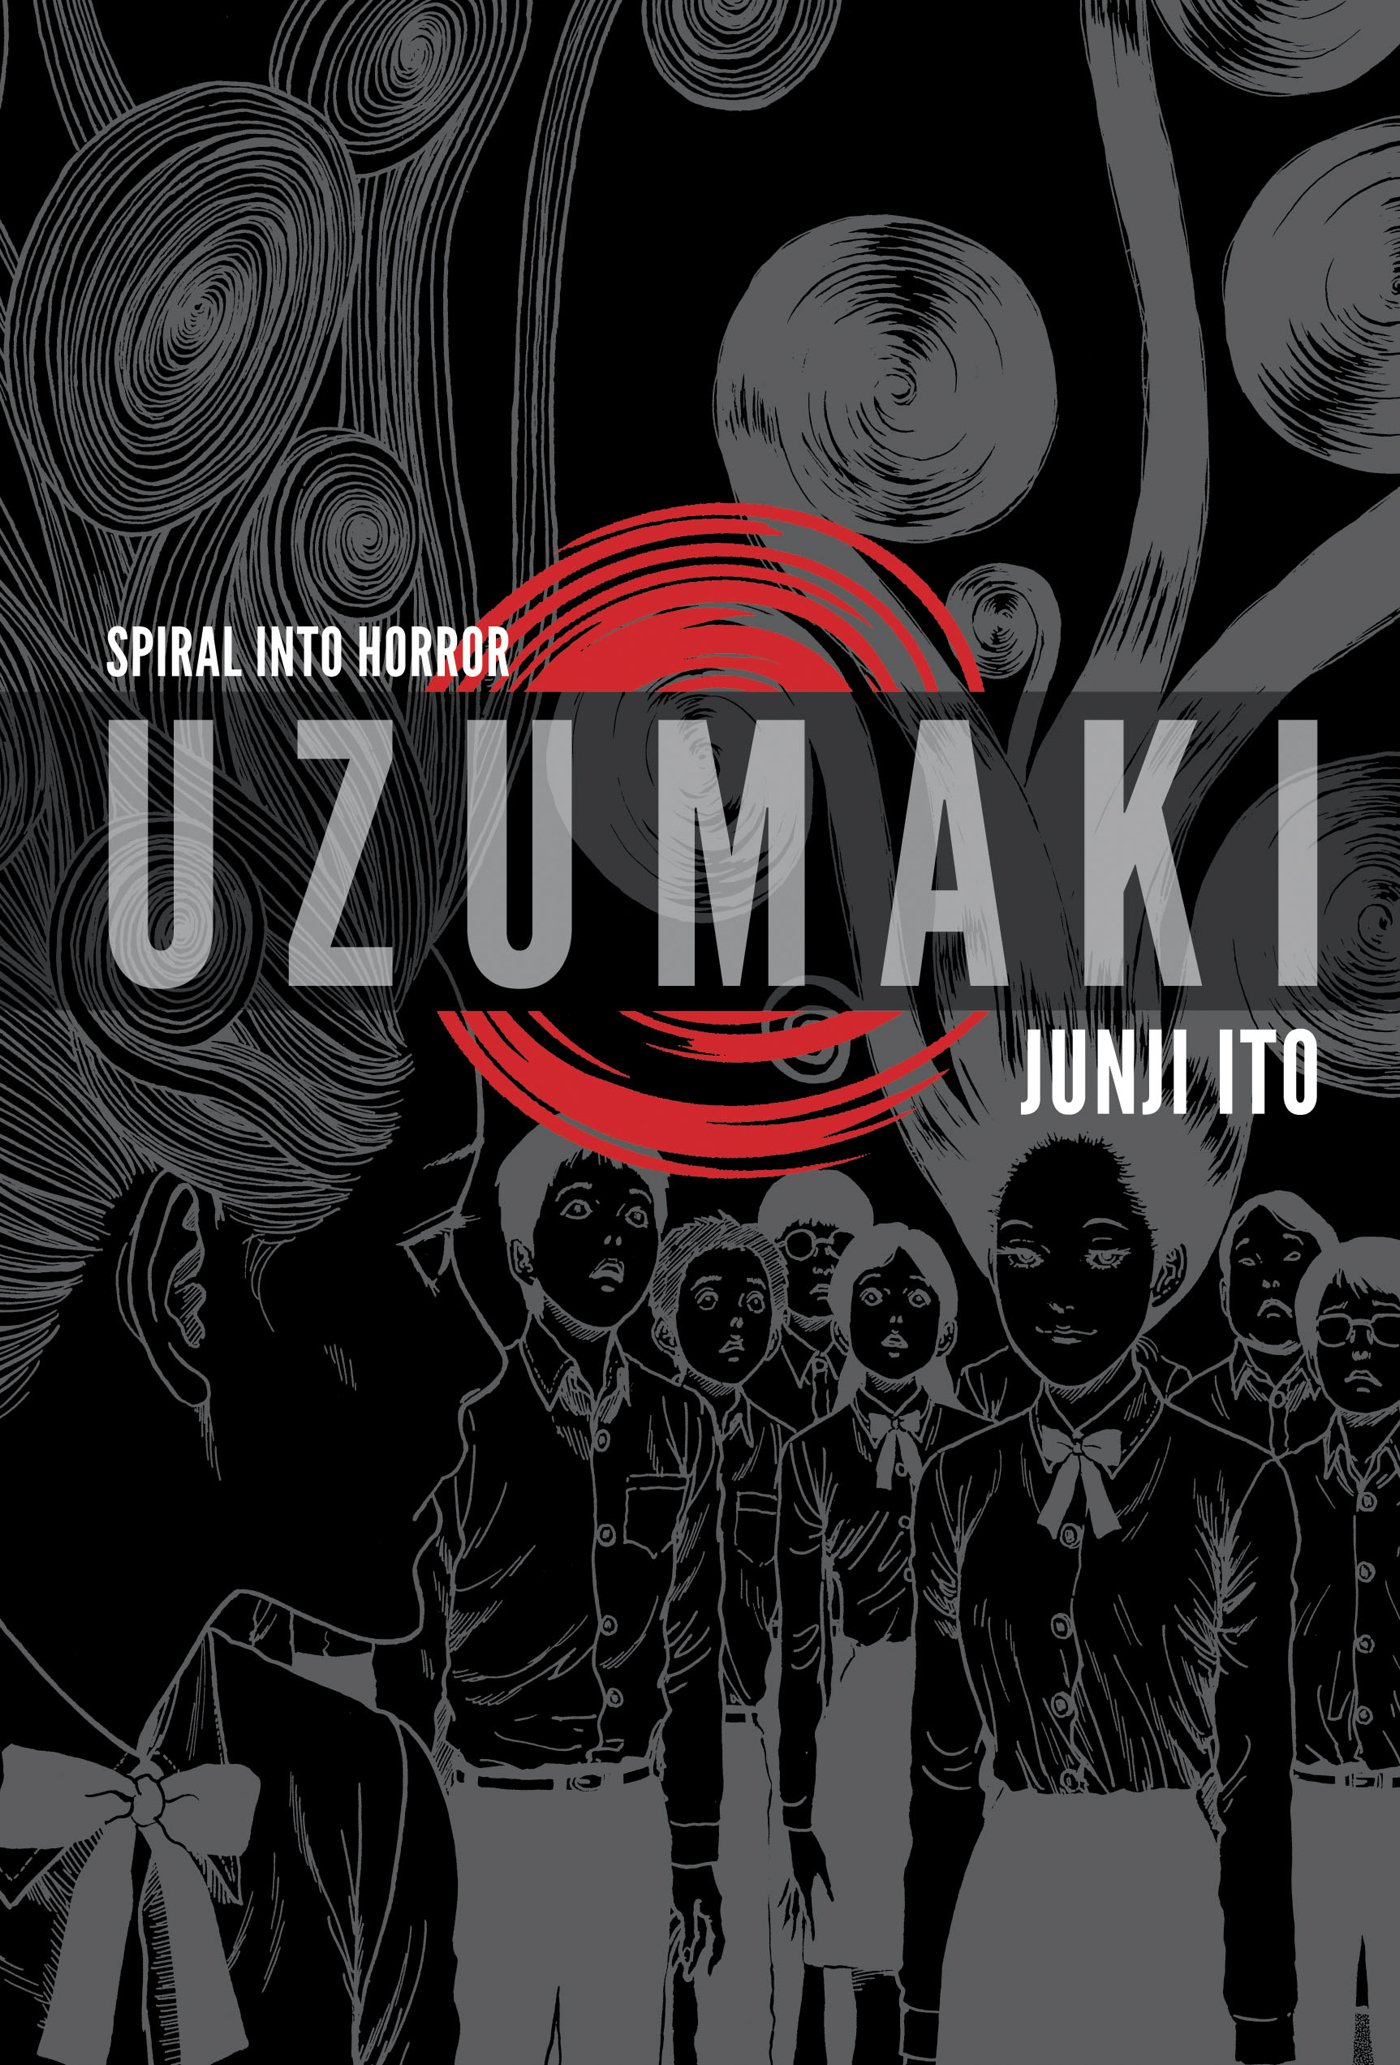 Uzumaki (2013, VIZ Media)